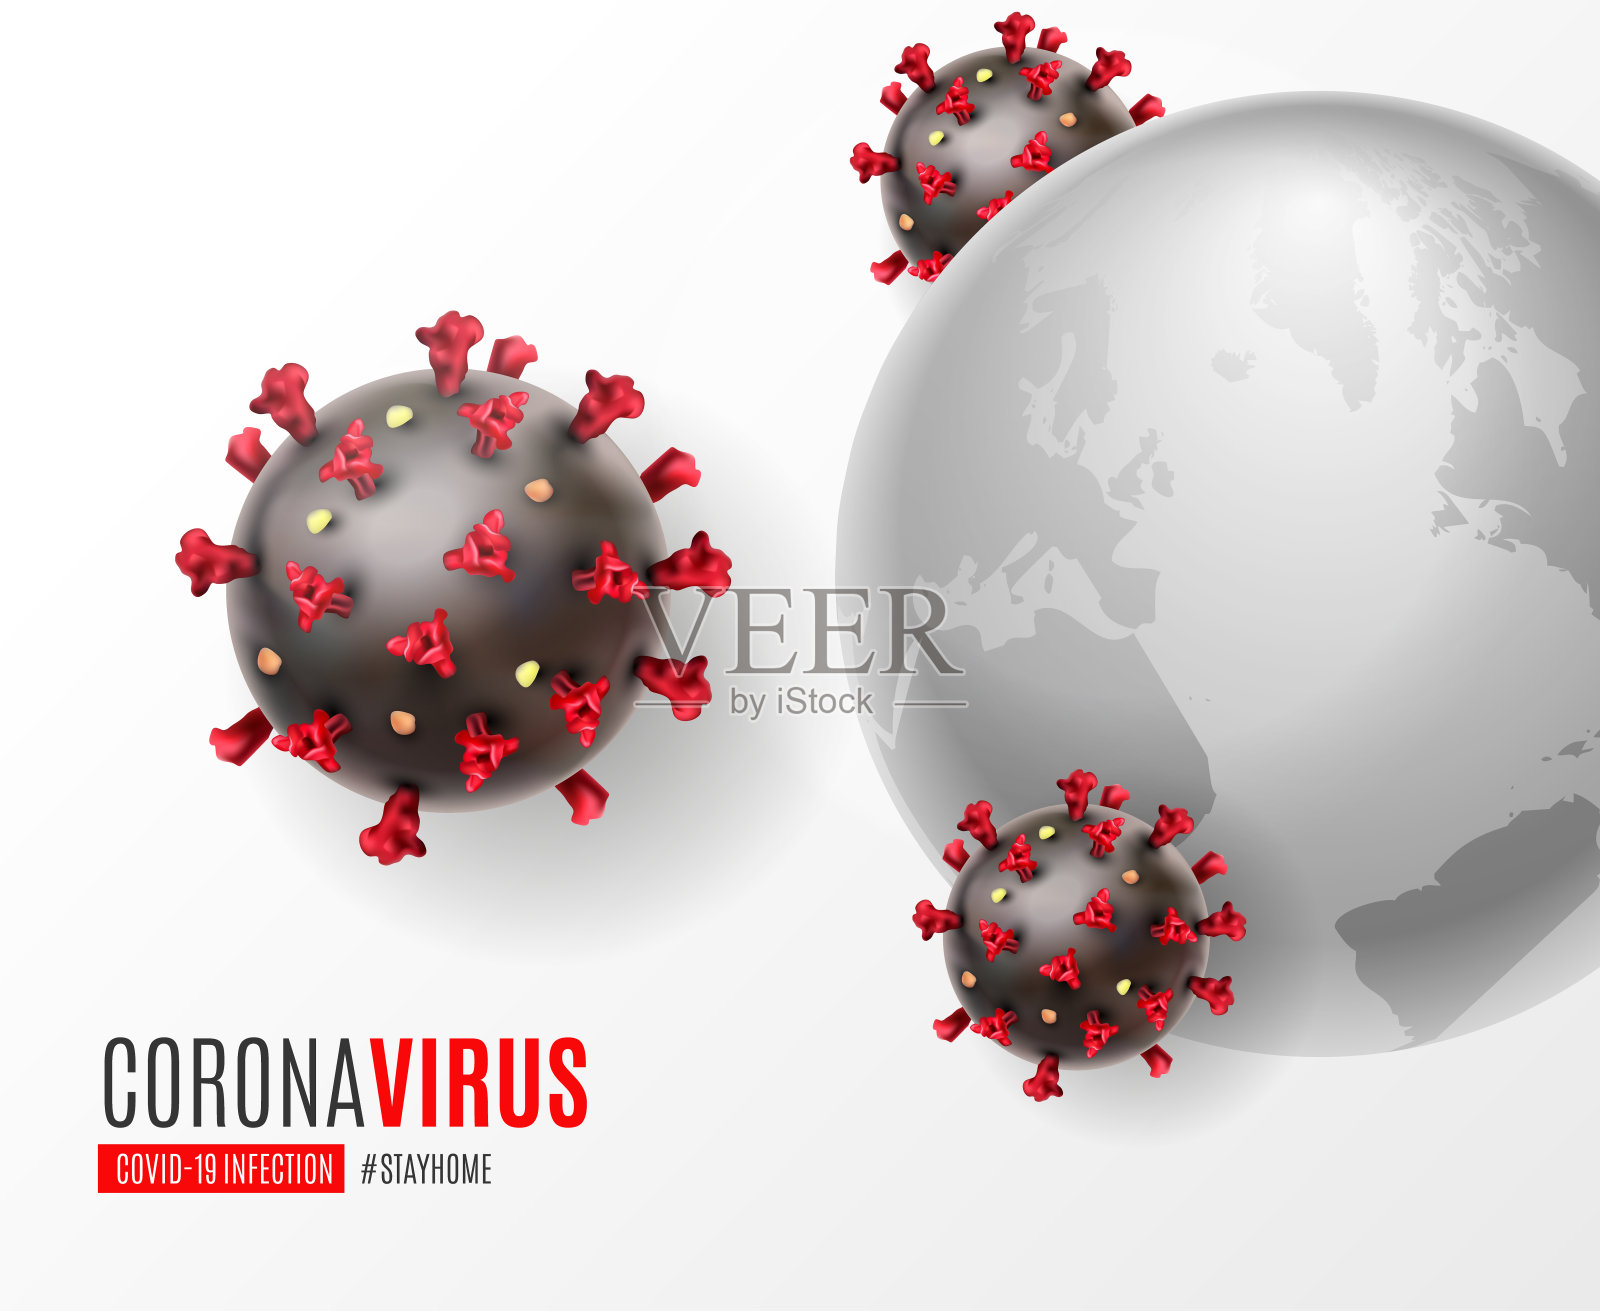 冠状病毒疾病COVID-19感染医疗与印刷和复制空间。新型冠状病毒的传播背景。呆在家里标签大流行风险背景媒介插图插画图片素材